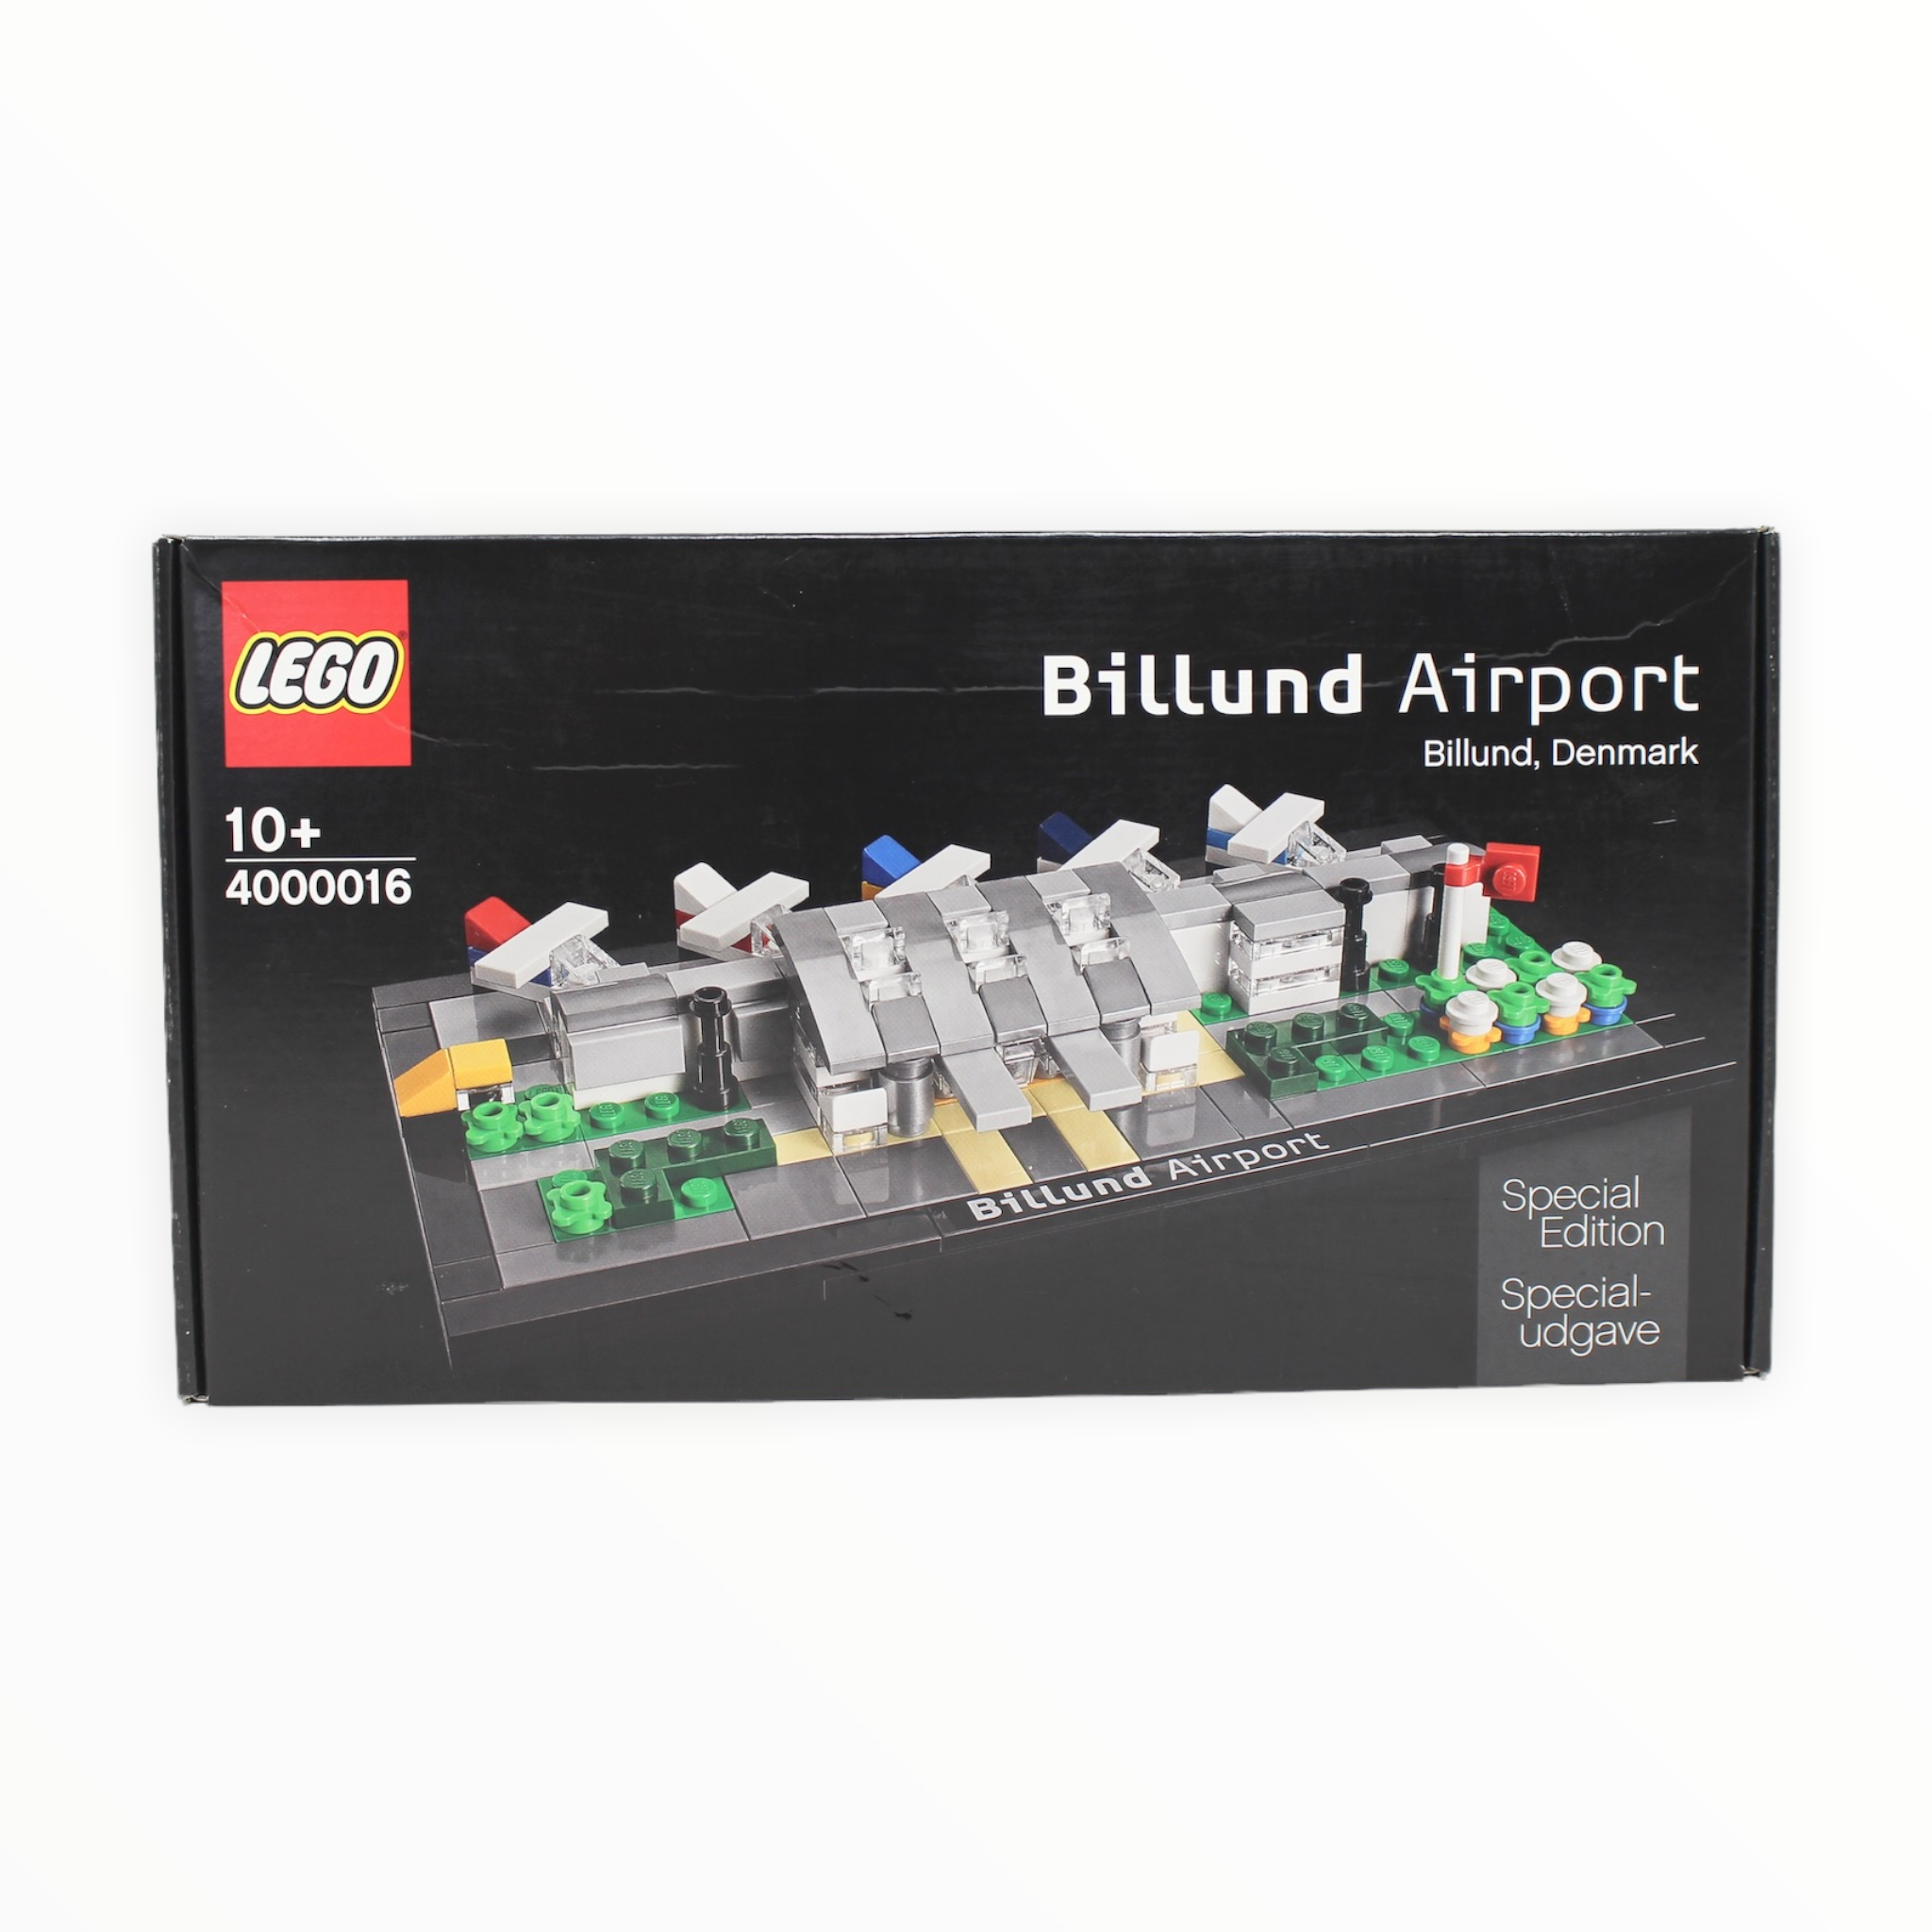 Retired Set 4000016 Billund Airport